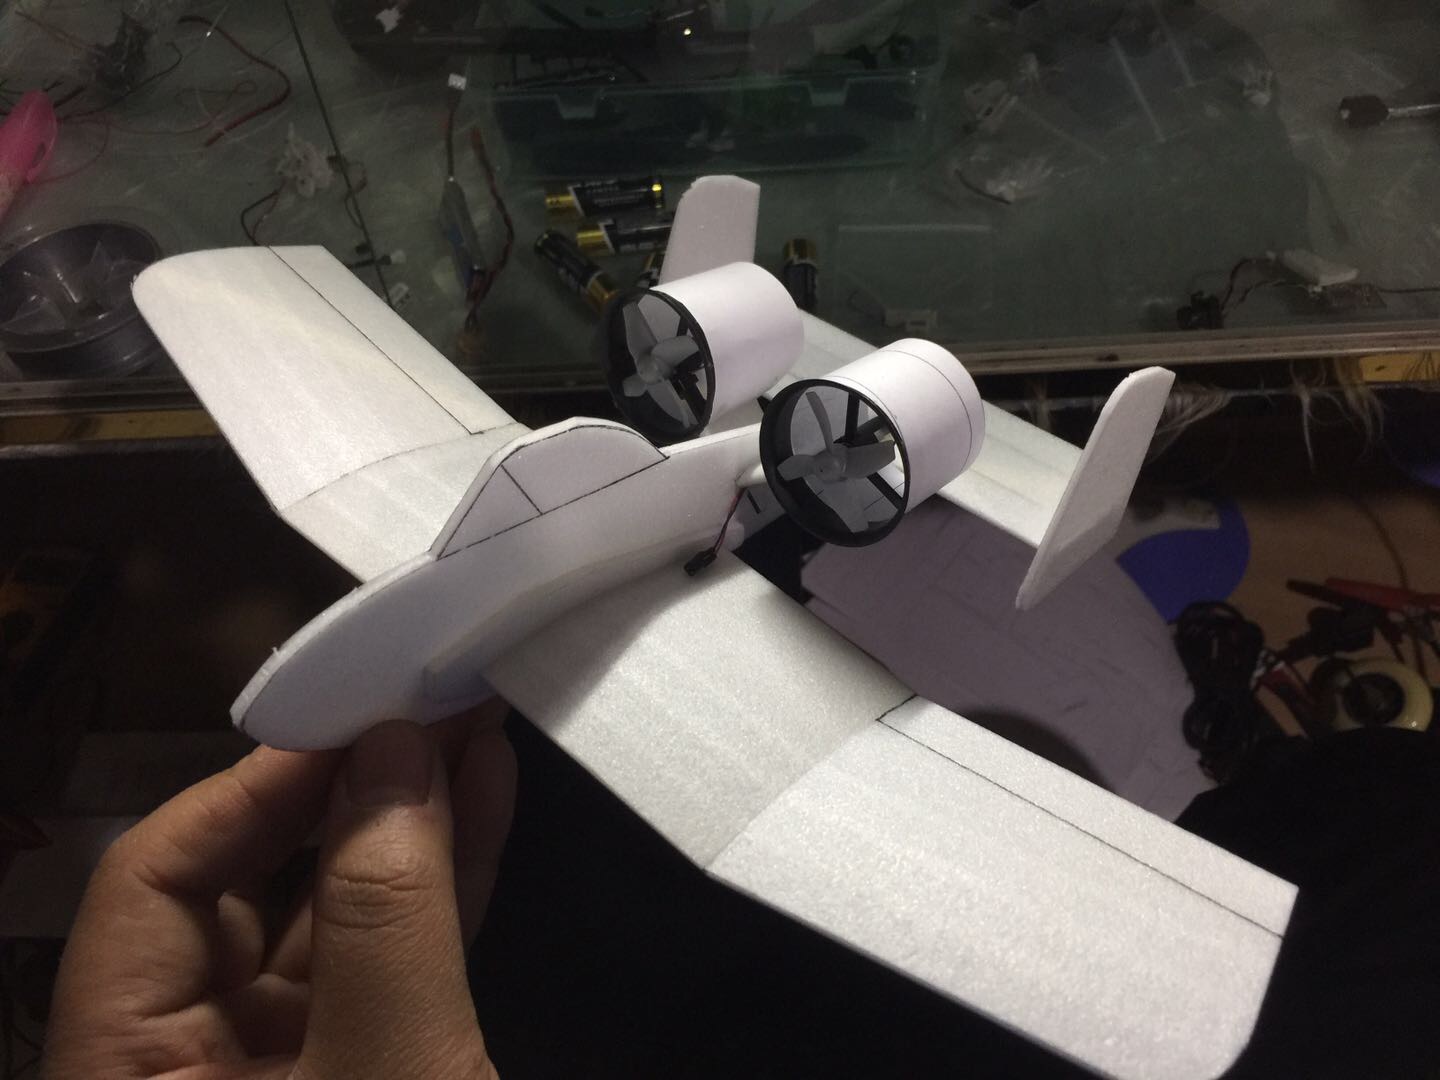 冷落了的小飞机 小飞机纸飞机,小飞机怎么叠,飞机小制作,回旋小飞机,小飞机配件 作者:空小白 2618 